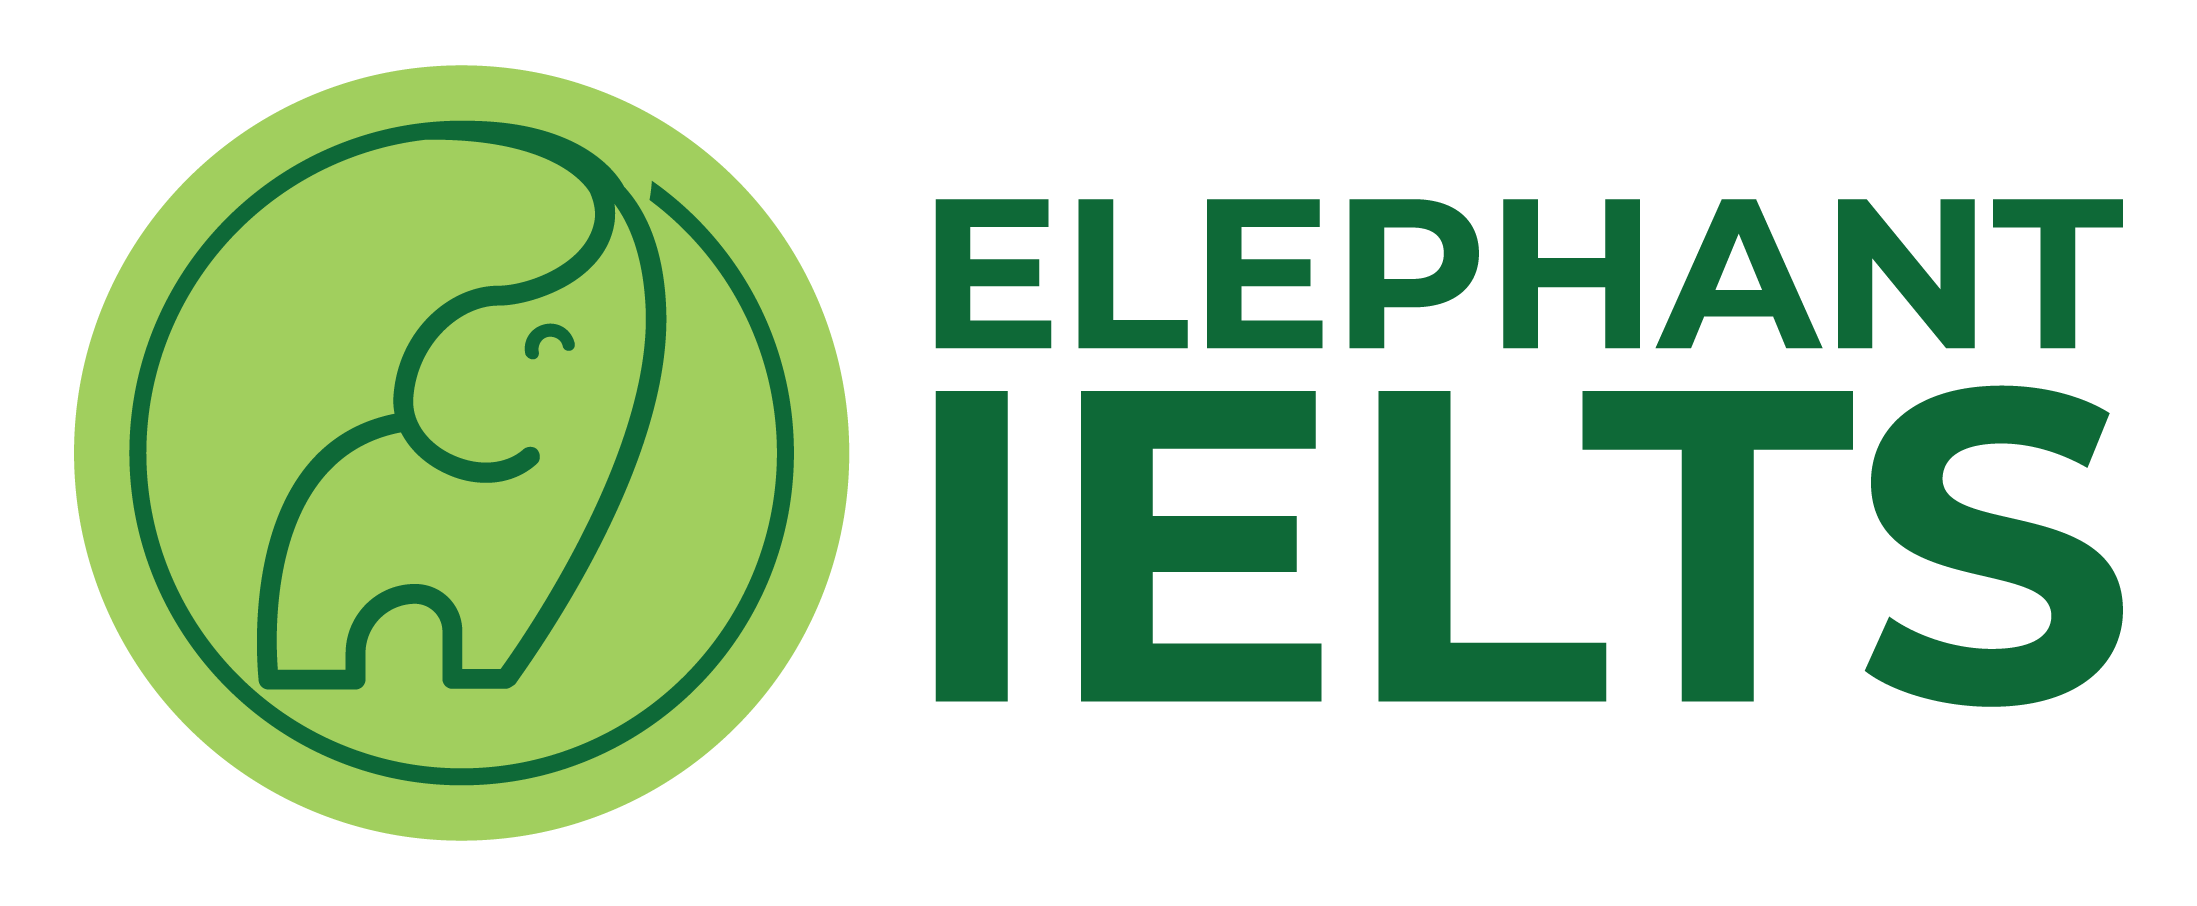 IELTS Elephant